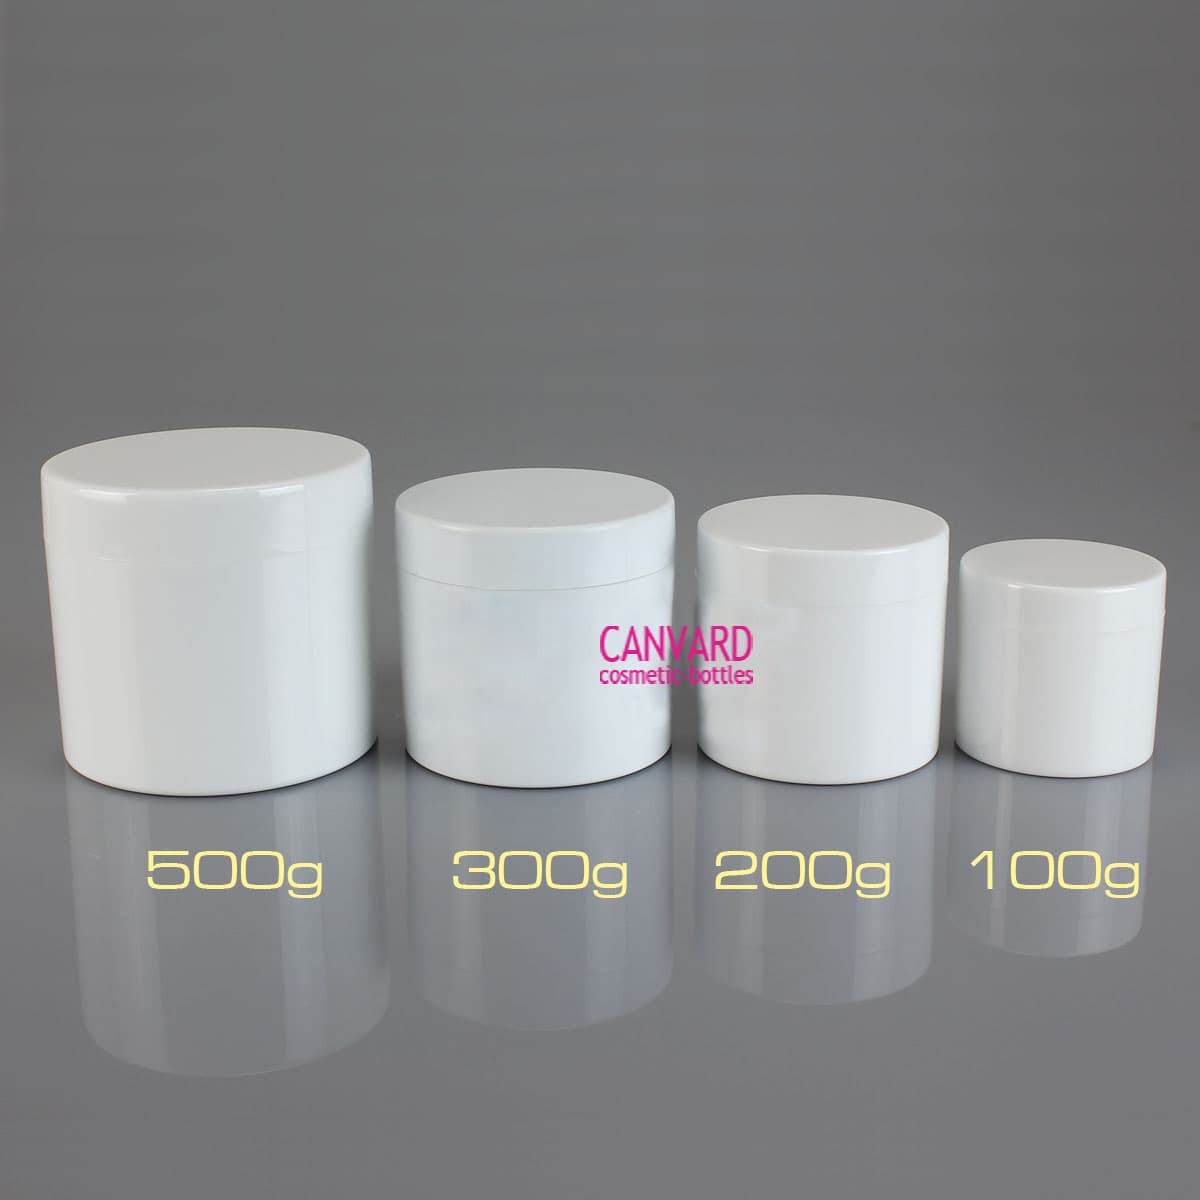 100g-200g-300g-500g-white face cream jars